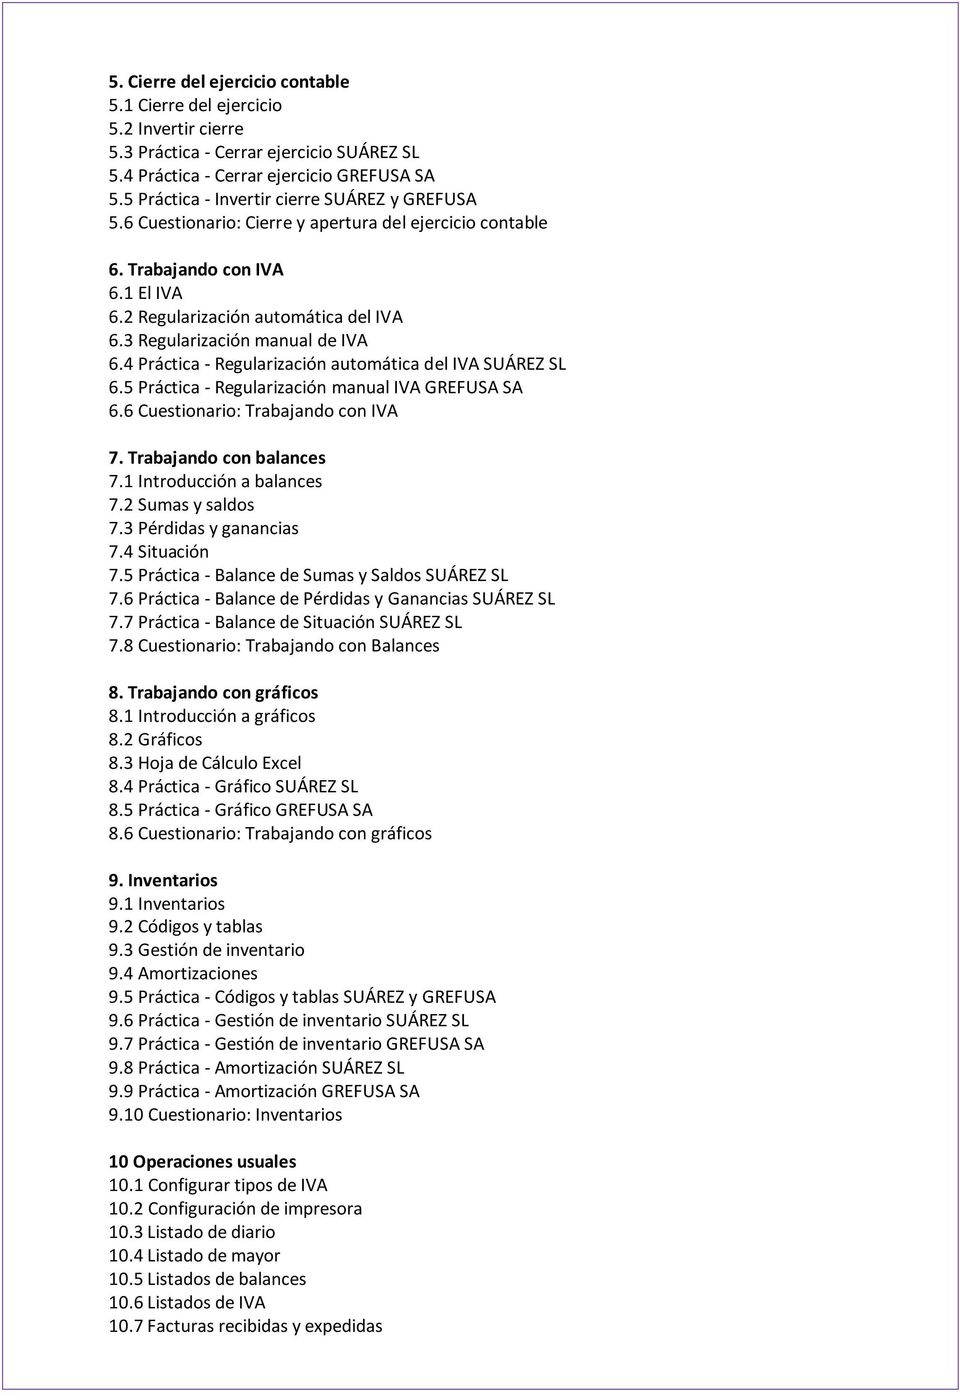 3 Regularización manual de IVA 6.4 Práctica - Regularización automática del IVA SUÁREZ SL 6.5 Práctica - Regularización manual IVA GREFUSA SA 6.6 Cuestionario: Trabajando con IVA 7.